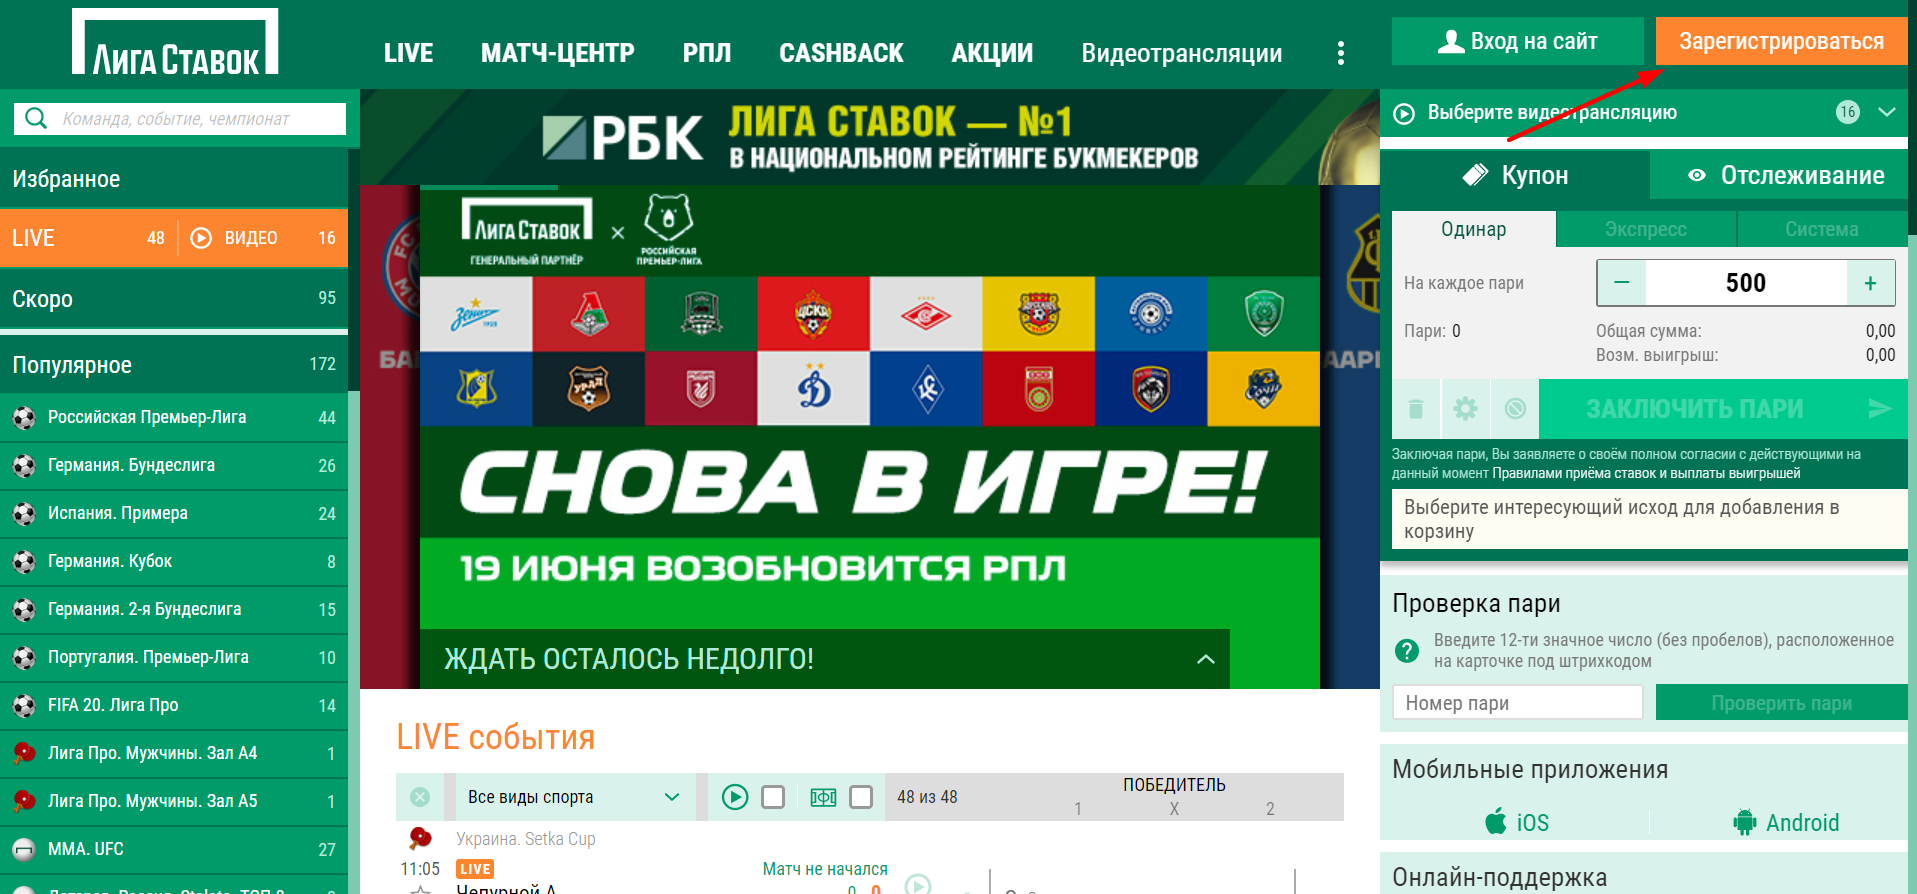 Лига букмекера джекпот казино онлайн московский